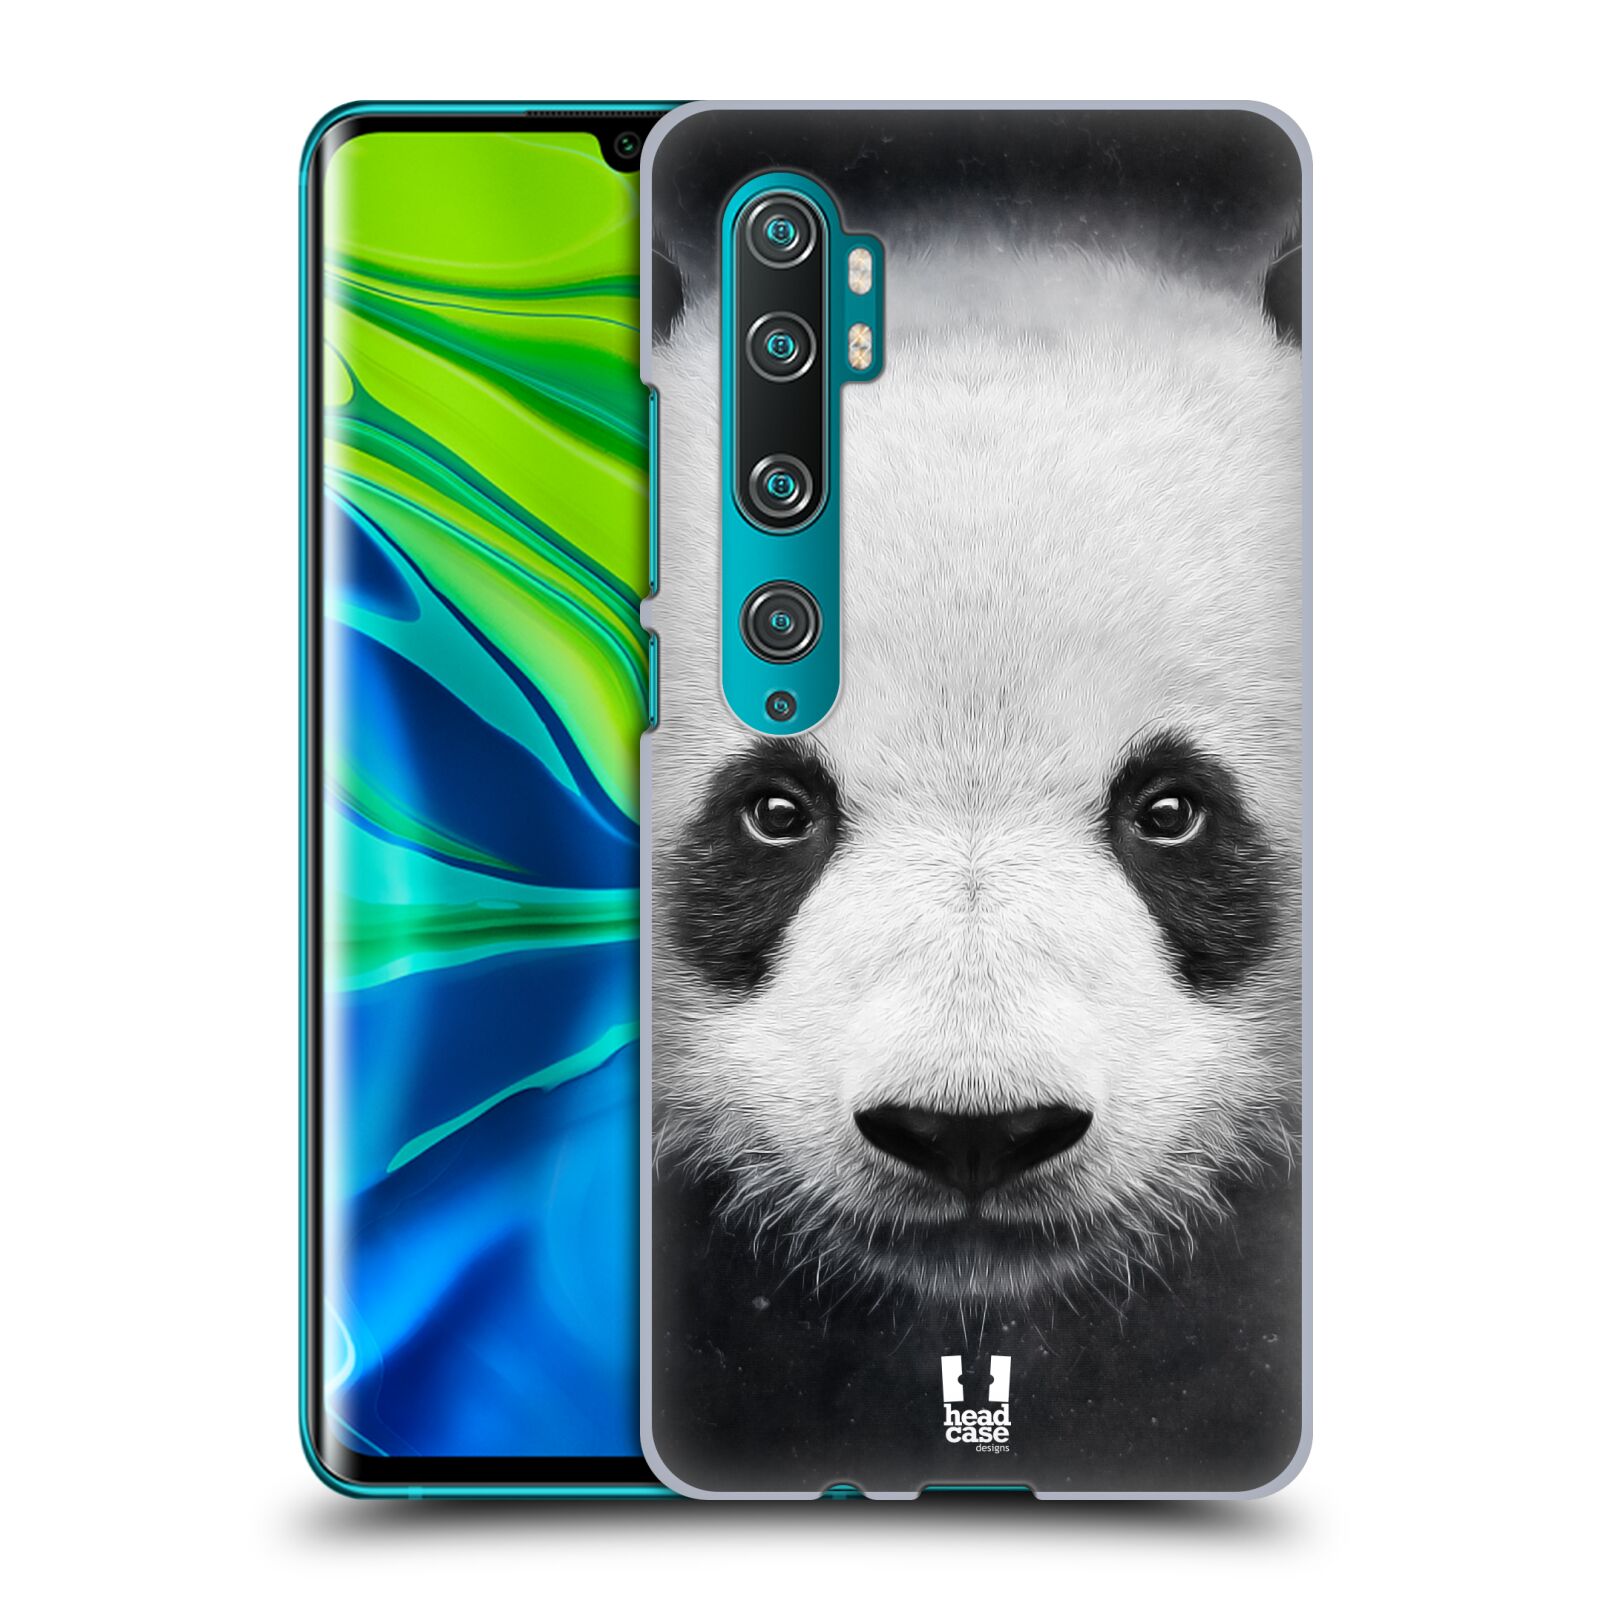 Pouzdro na mobil Xiaomi Mi Note 10 / Mi Note 10 PRO - HEAD CASE - vzor Zvířecí tváře medvěd panda